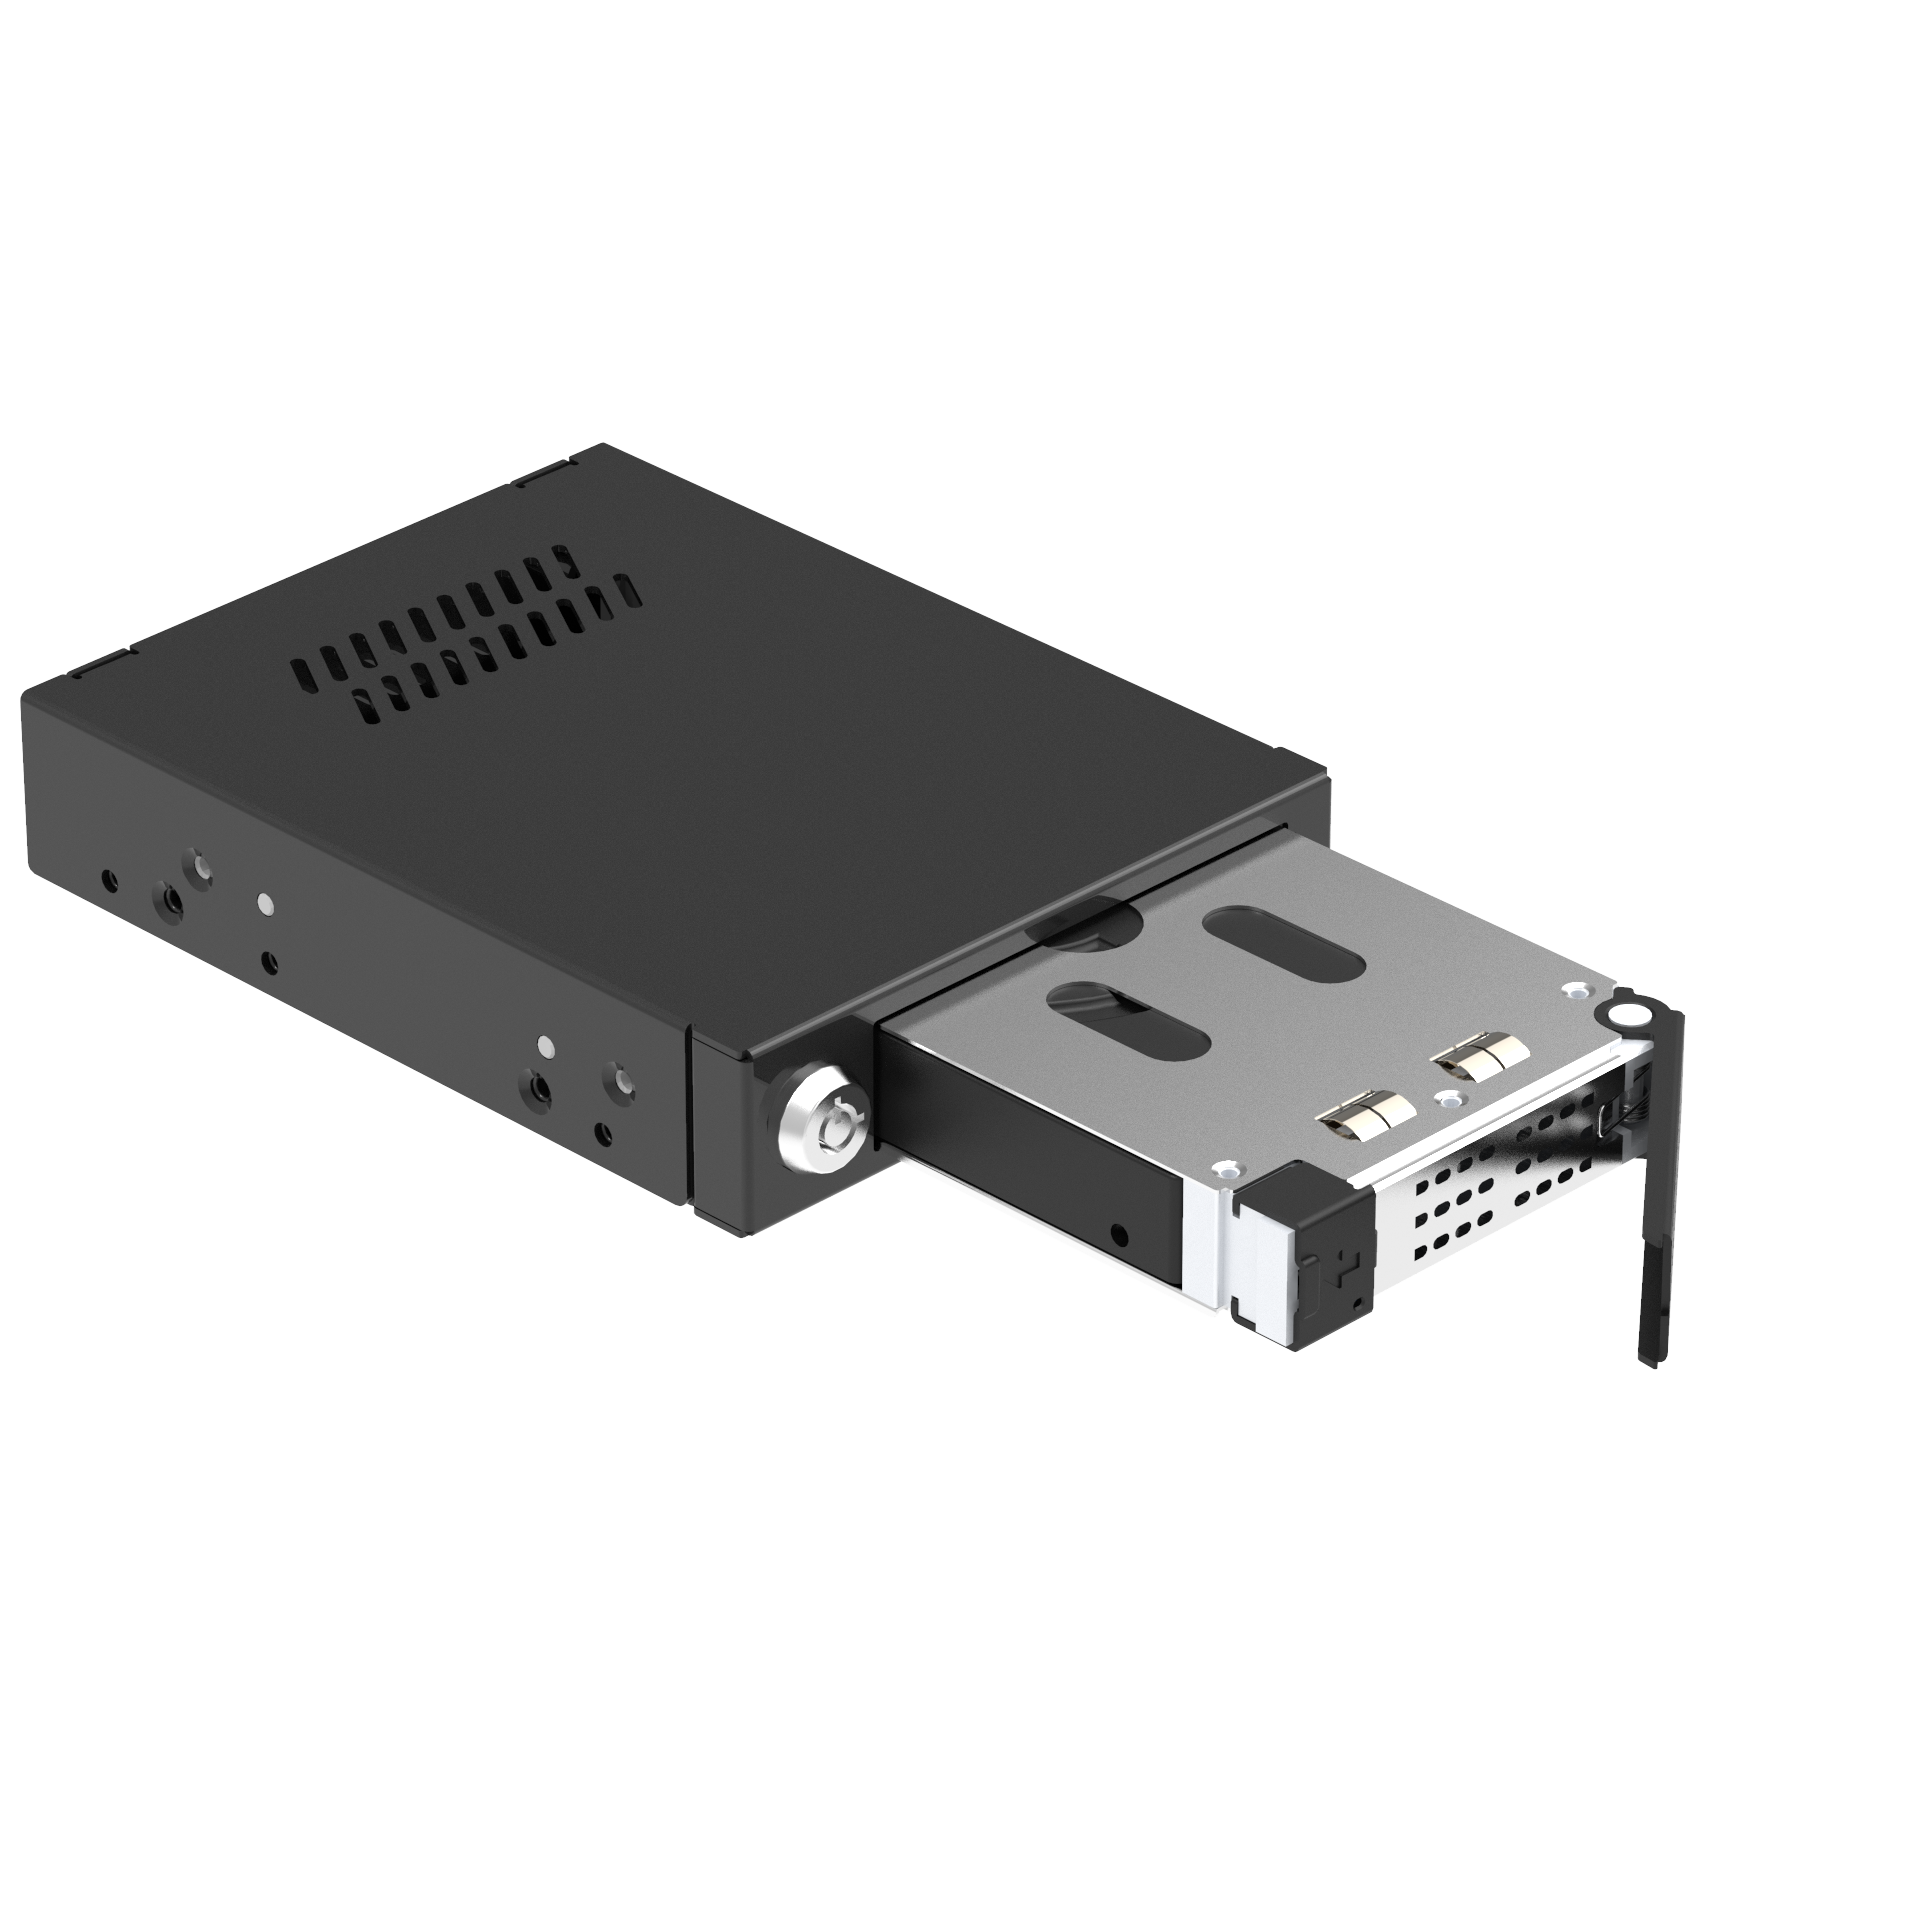 Unestech 单盘位2.5寸SATA SAS热插拔硬盘抽取盒 适用于3.5寸软驱位空间